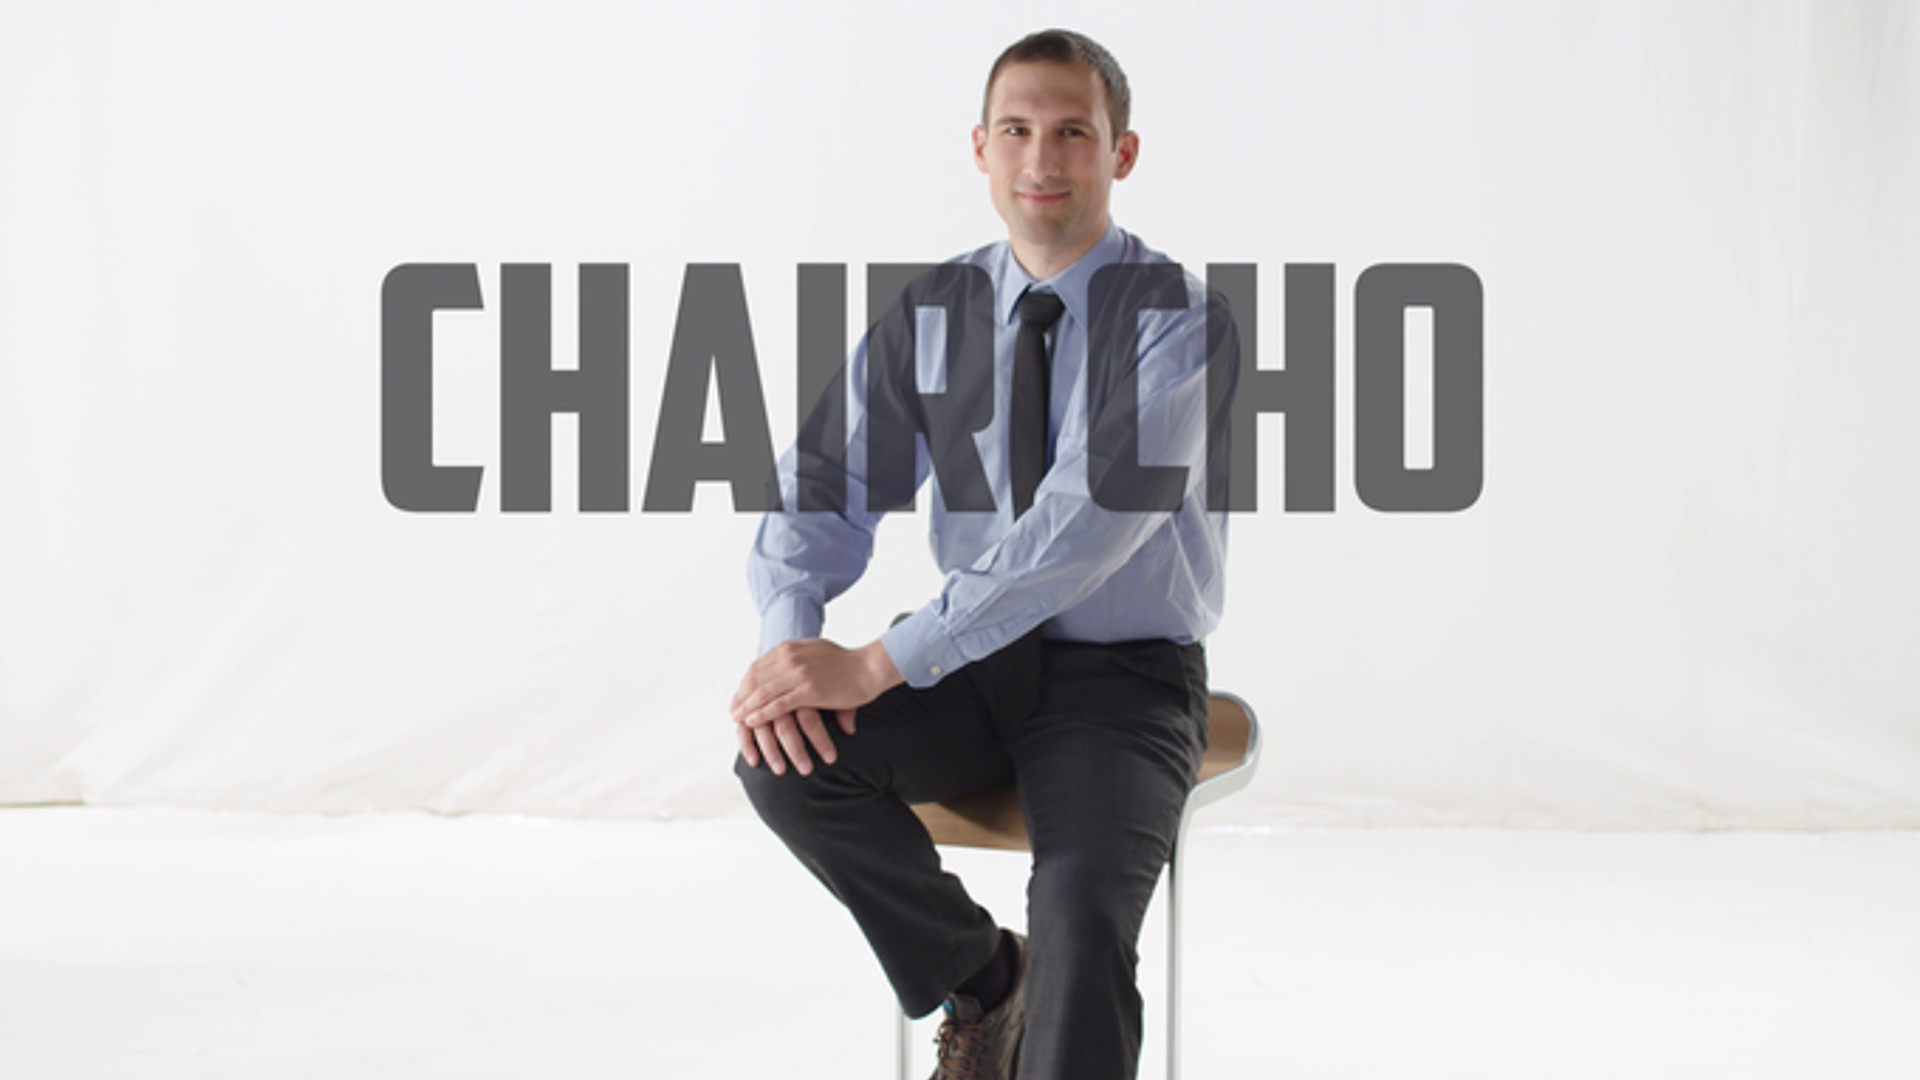 Project "Chairico" - Ein Imagefilm